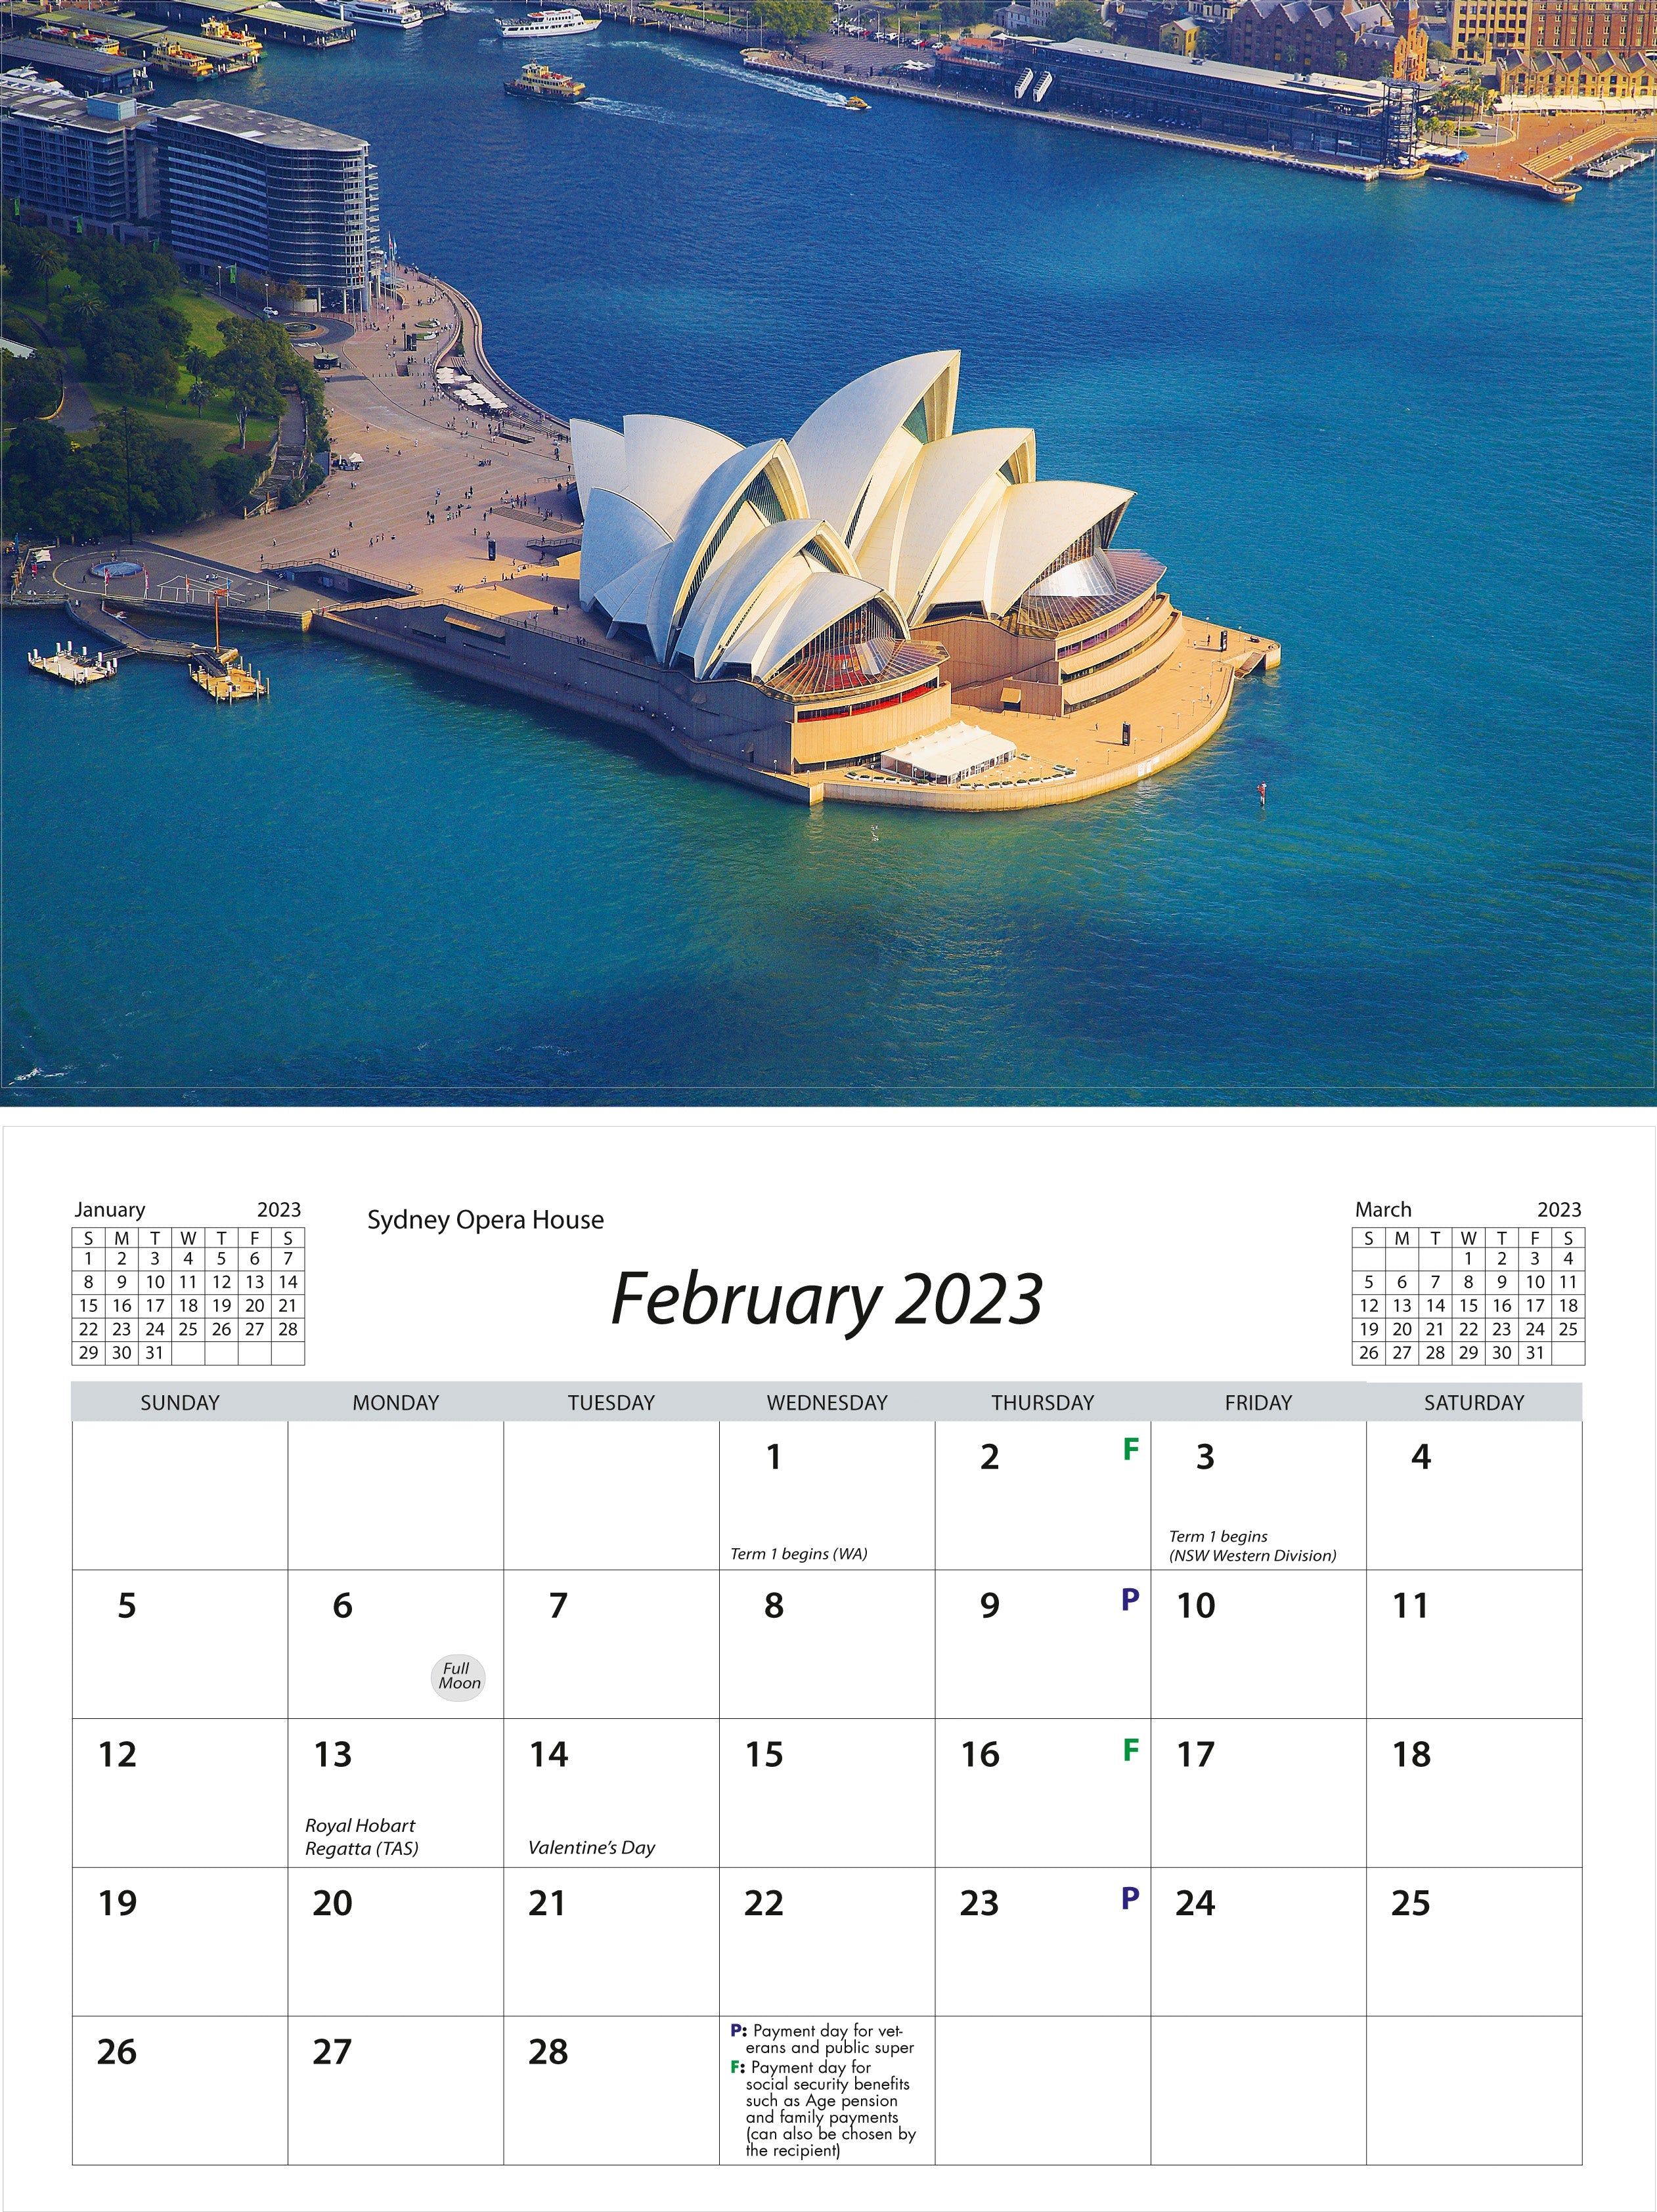 2023 Sydney Harbour - Desk Easel Calendar